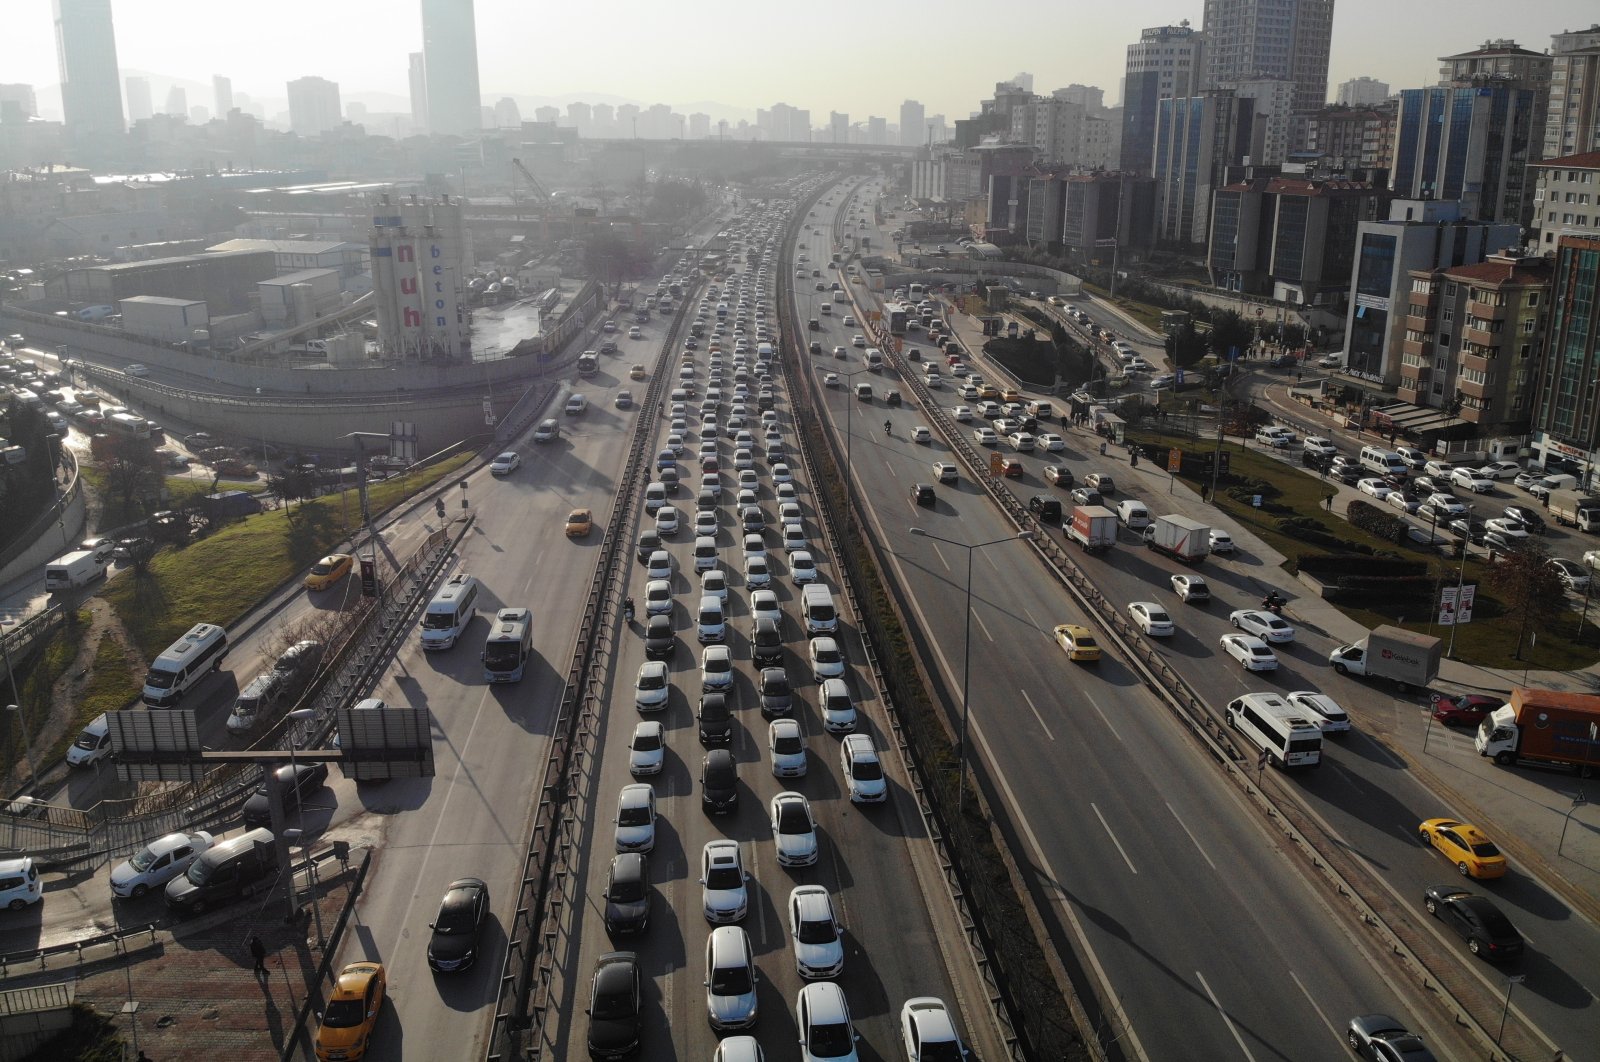 Lebih banyak kendaraan, lebih banyak masalah untuk Istanbul yang terganggu oleh lalu lintas